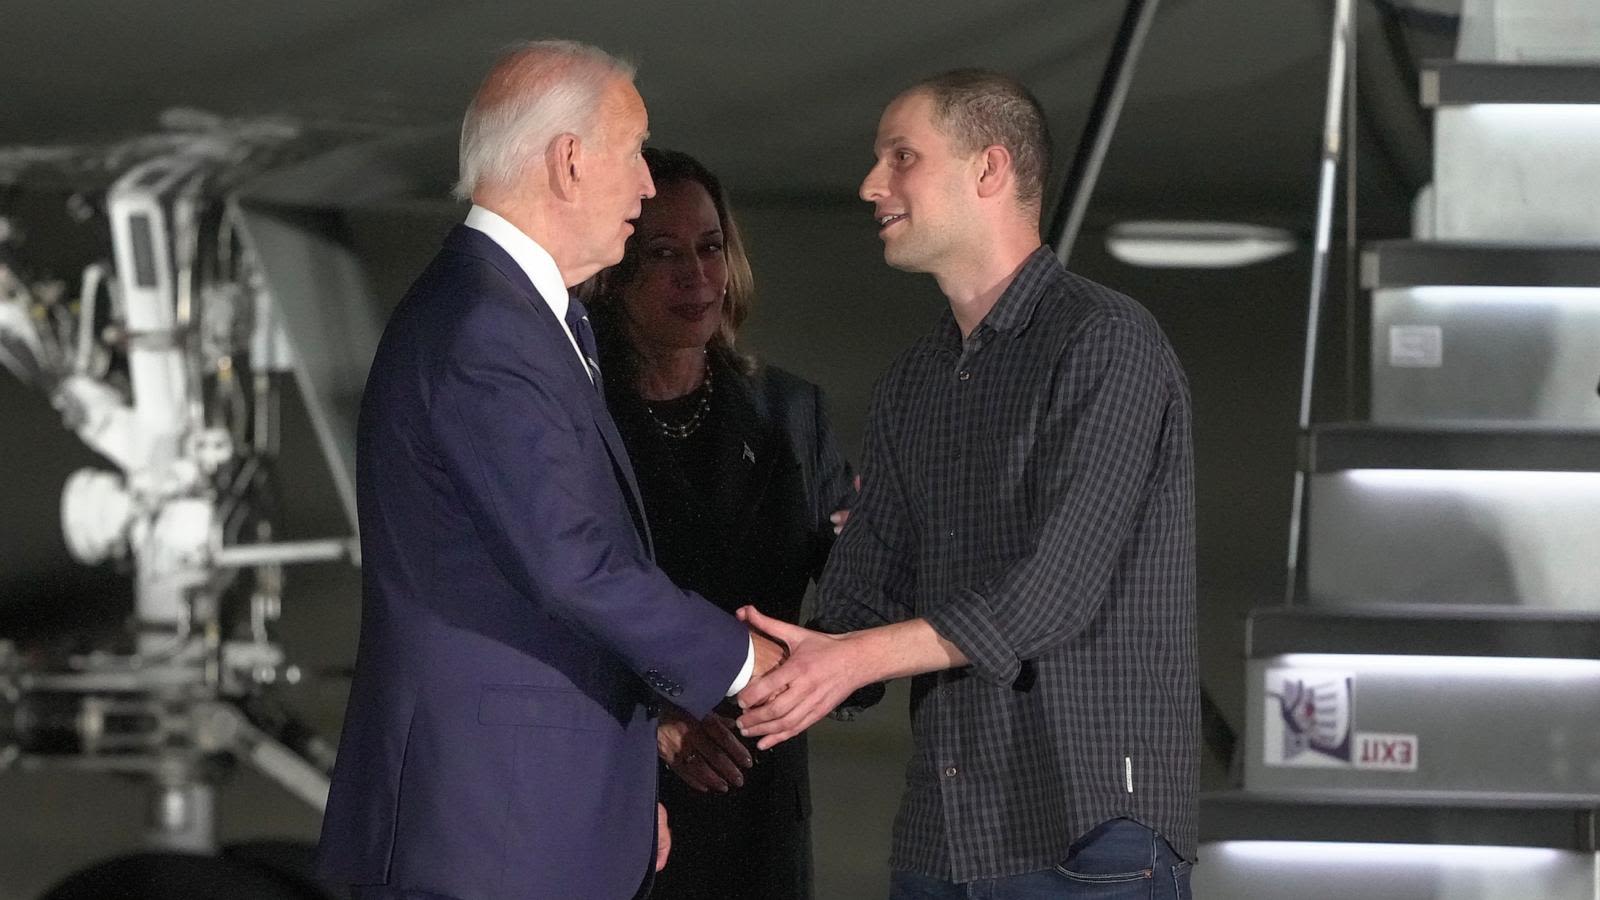 Evan Gershkovich, Paul Whelan greeted by President Biden, VP Harris after landing on US soil